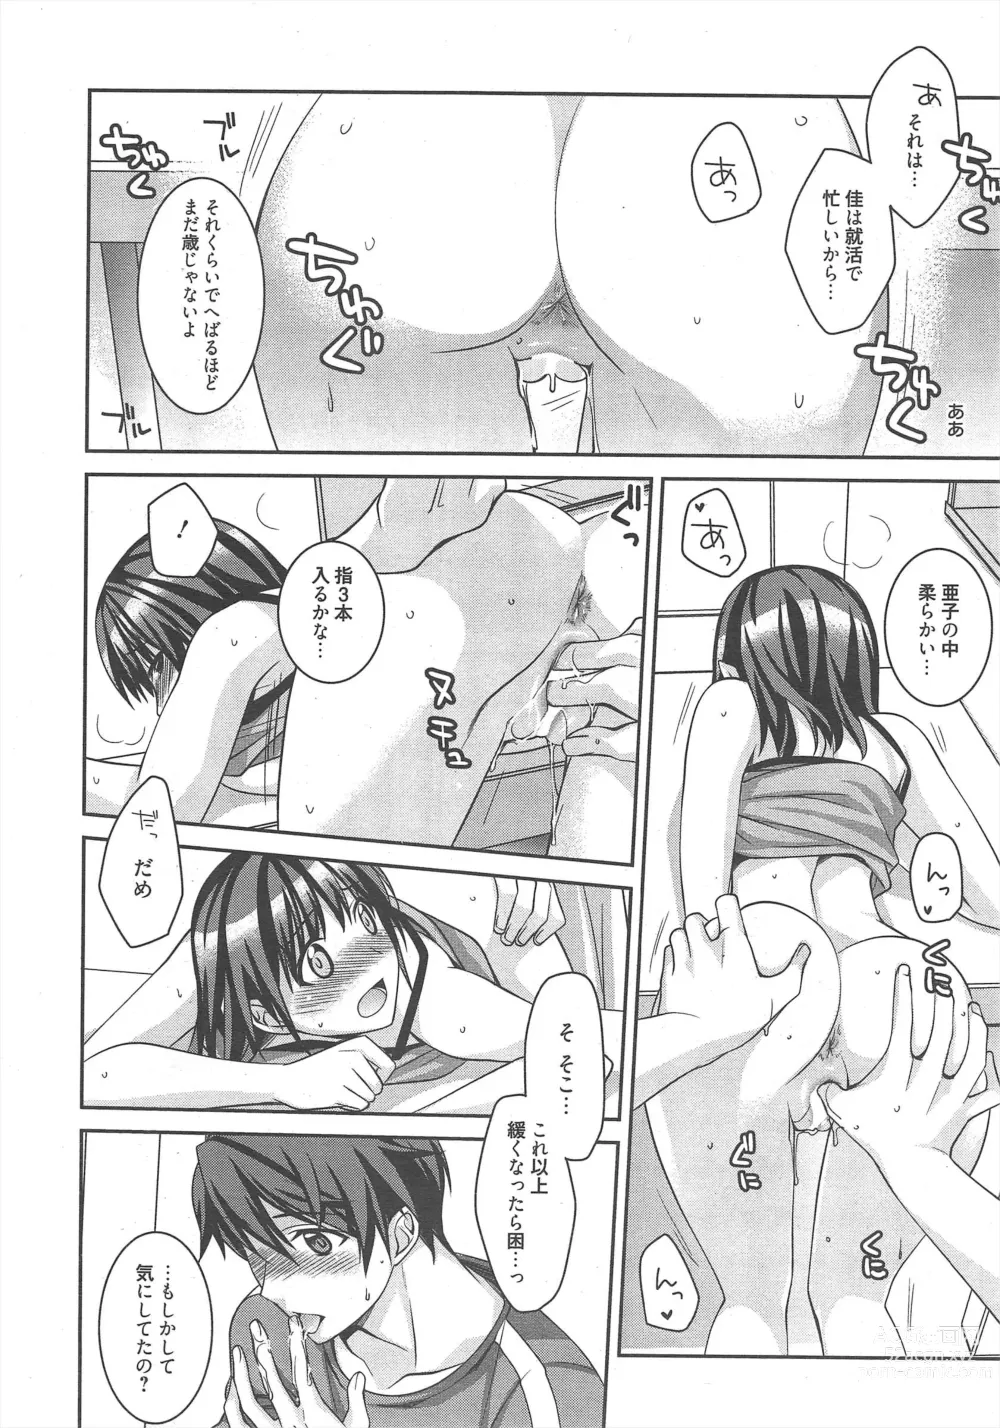 Page 11 of manga Manga Bangaichi 2012-11